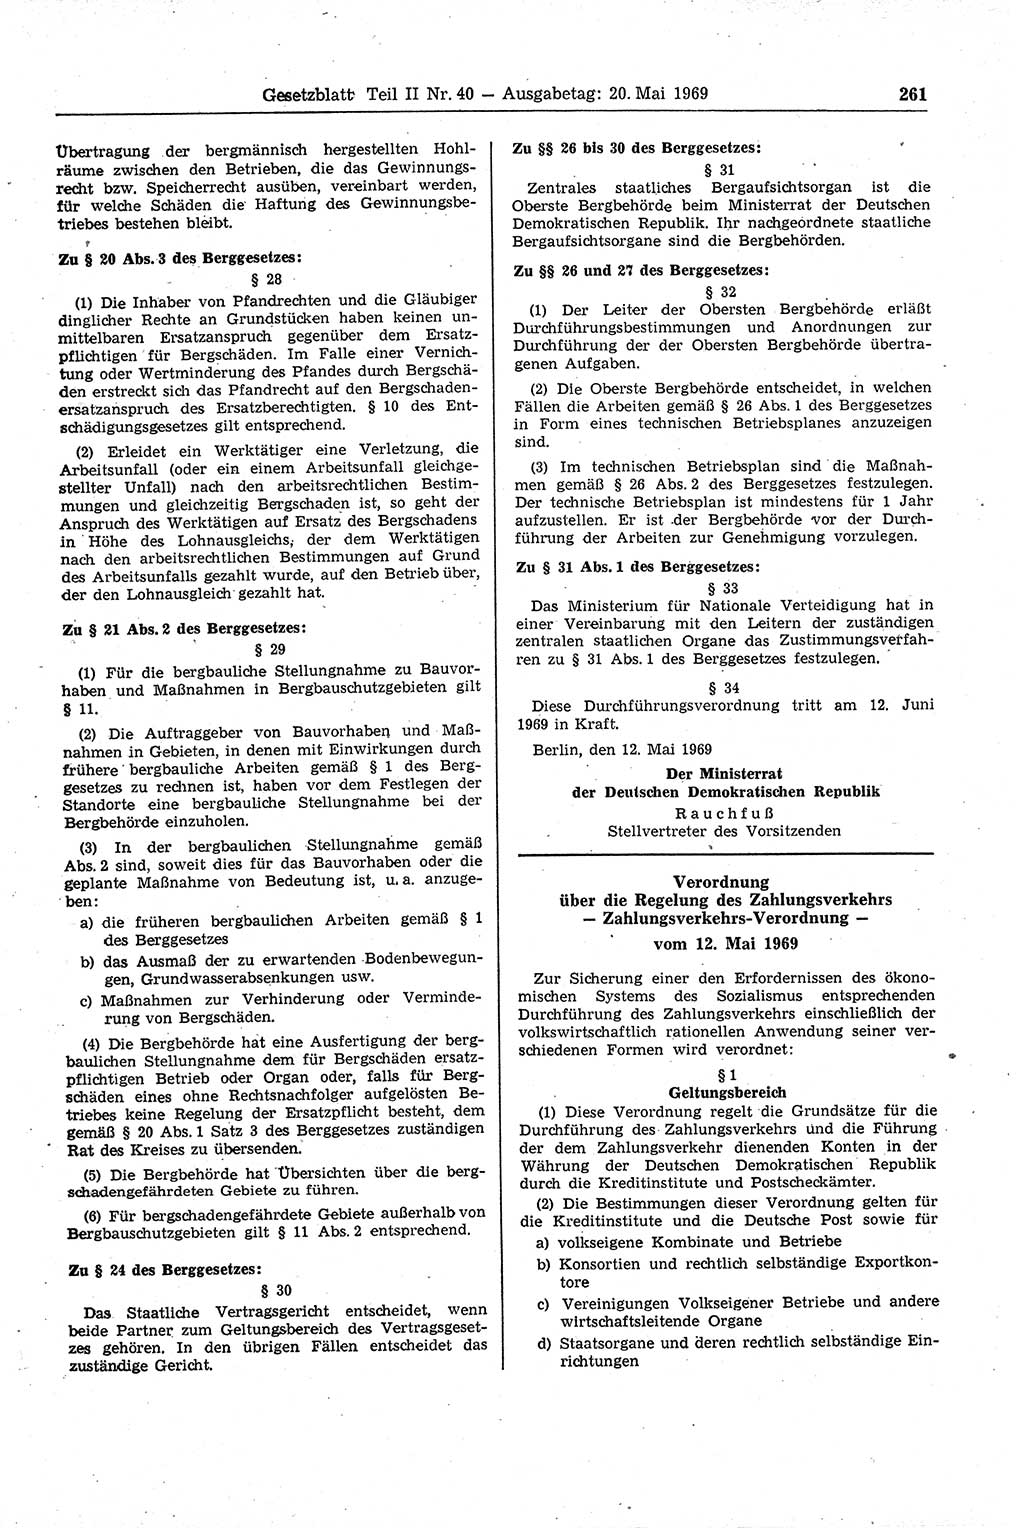 Gesetzblatt (GBl.) der Deutschen Demokratischen Republik (DDR) Teil ⅠⅠ 1969, Seite 261 (GBl. DDR ⅠⅠ 1969, S. 261)